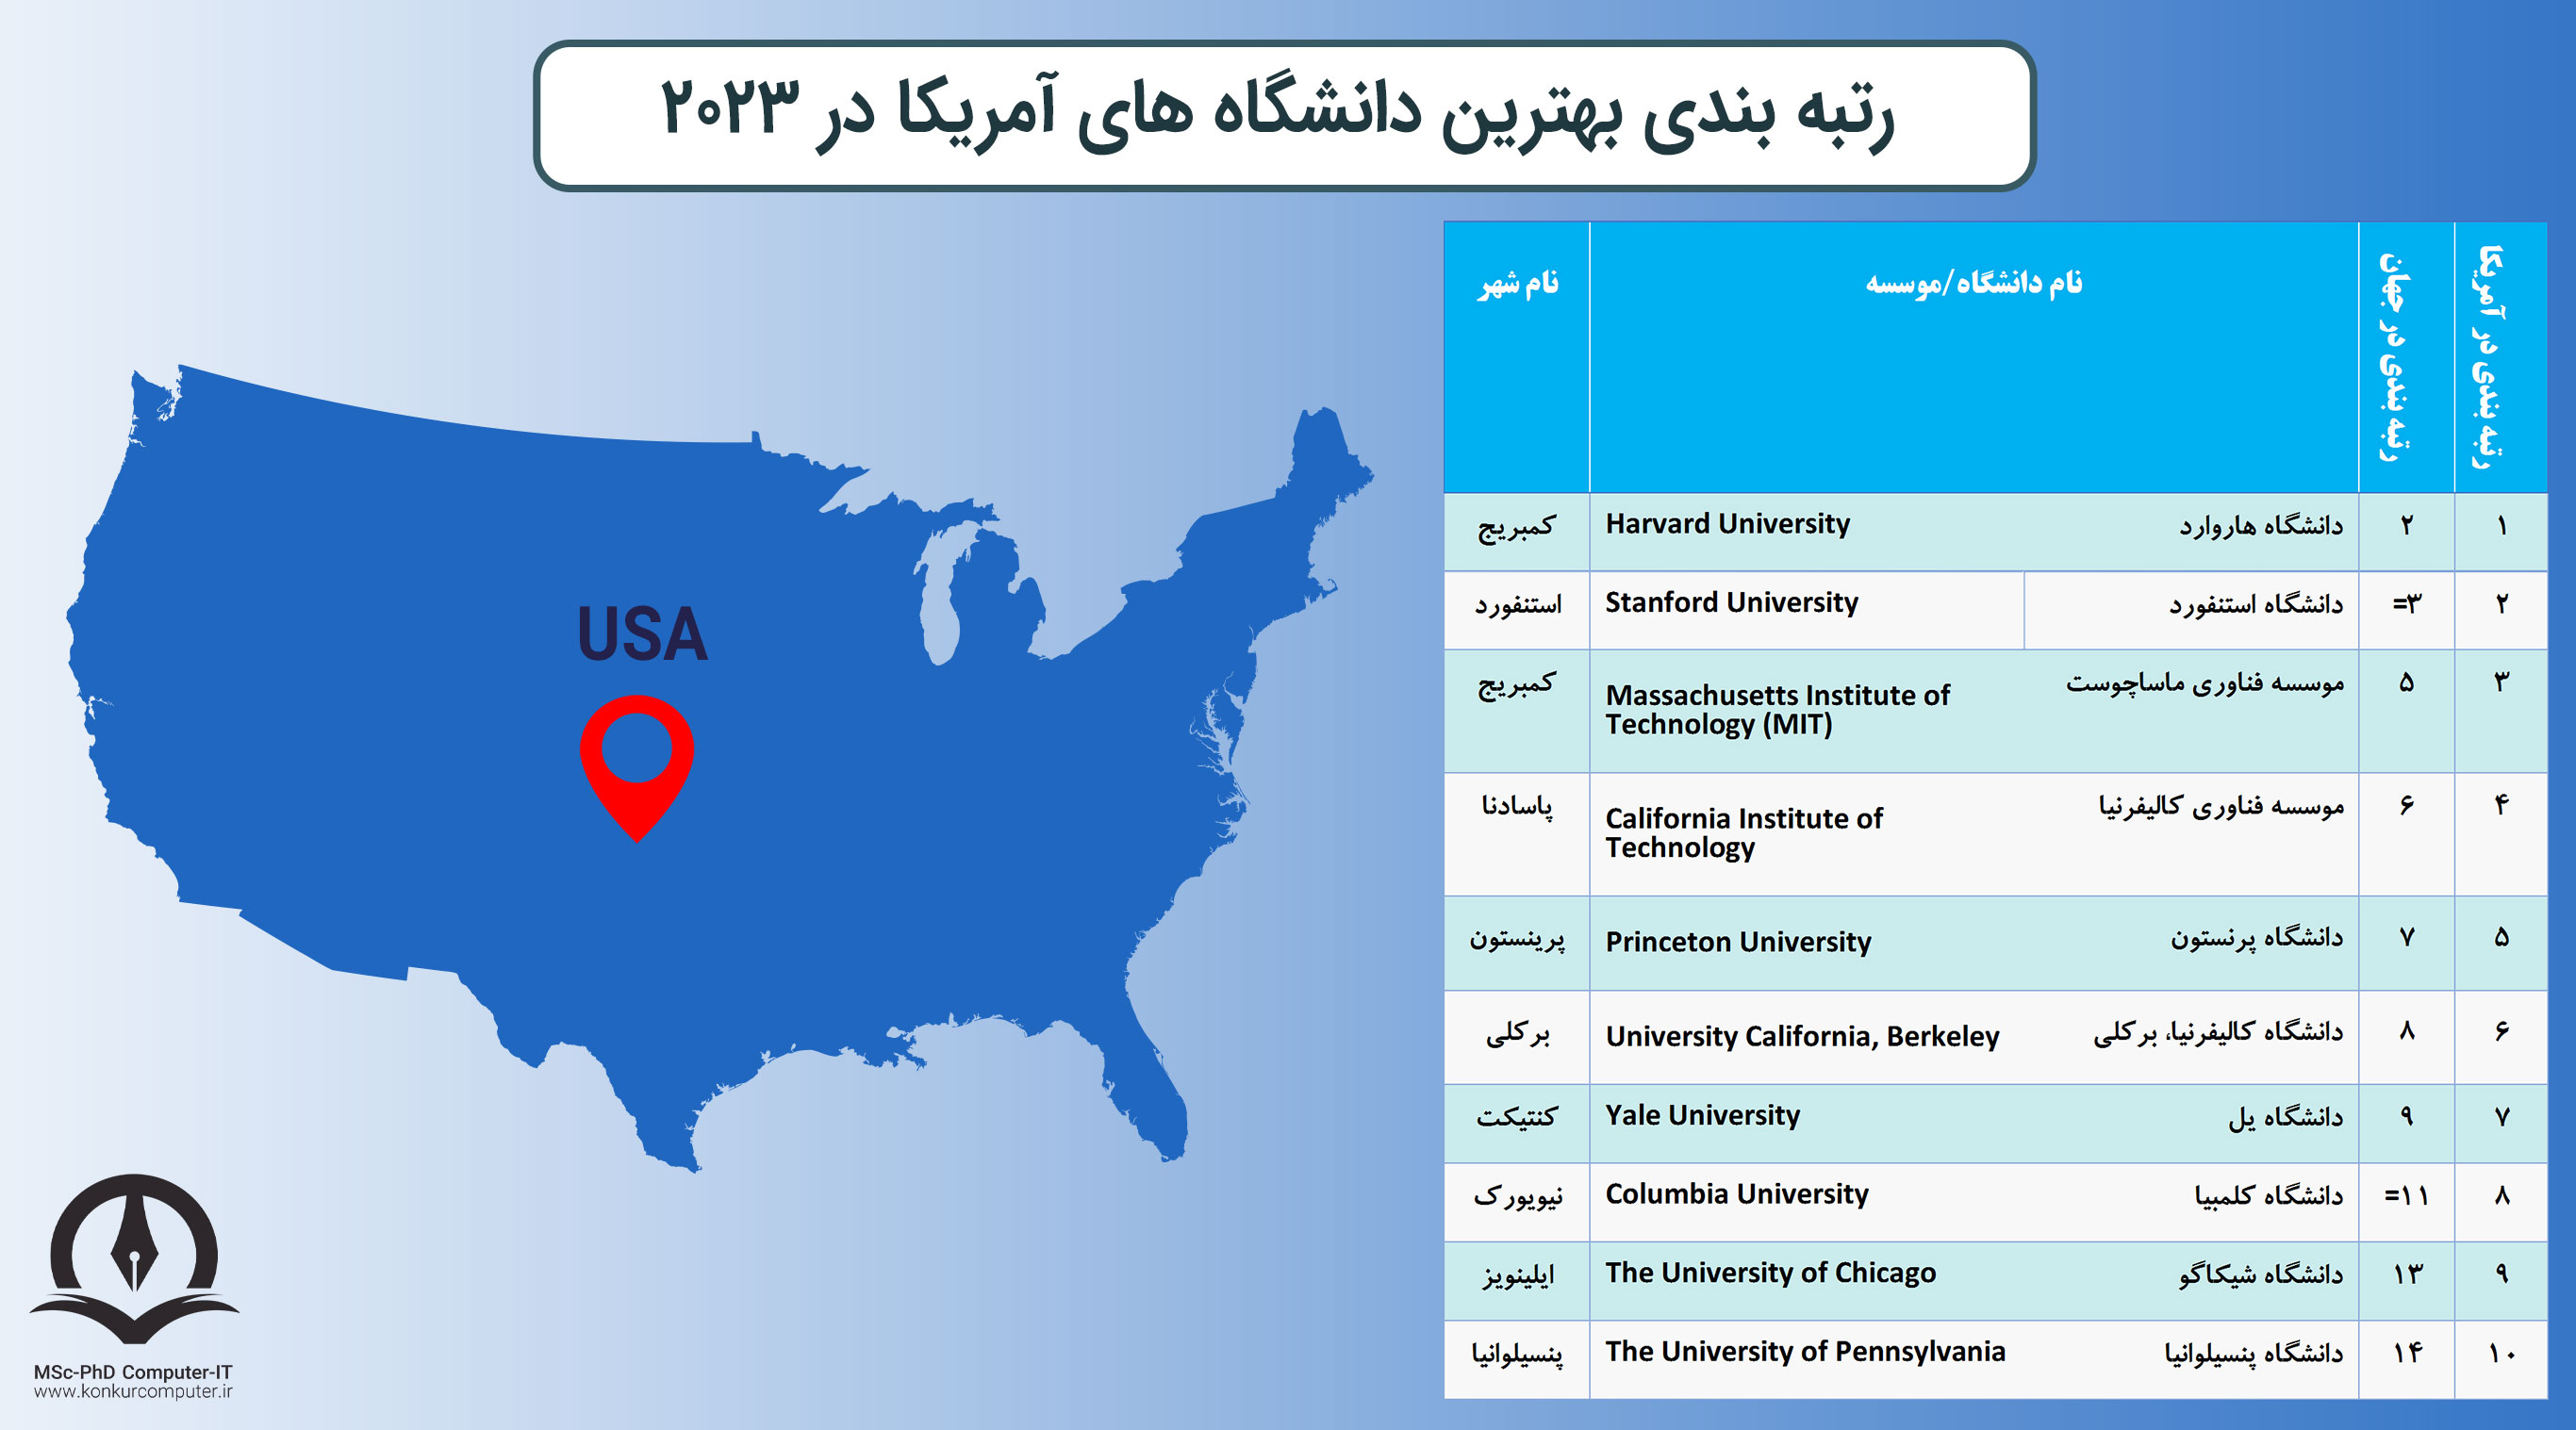 این تصویر جدول رتبه بندی بهترین دانشگاه های آمریکا در سال 2023 را نشان می دهد. ستون های این جدول به ترتیب شامل عدد رتبه بندی، نام دانشگاه به فارسی و انگلیسی و نام کشوری که دانشگاه در آن قرار دارد آورده شده است